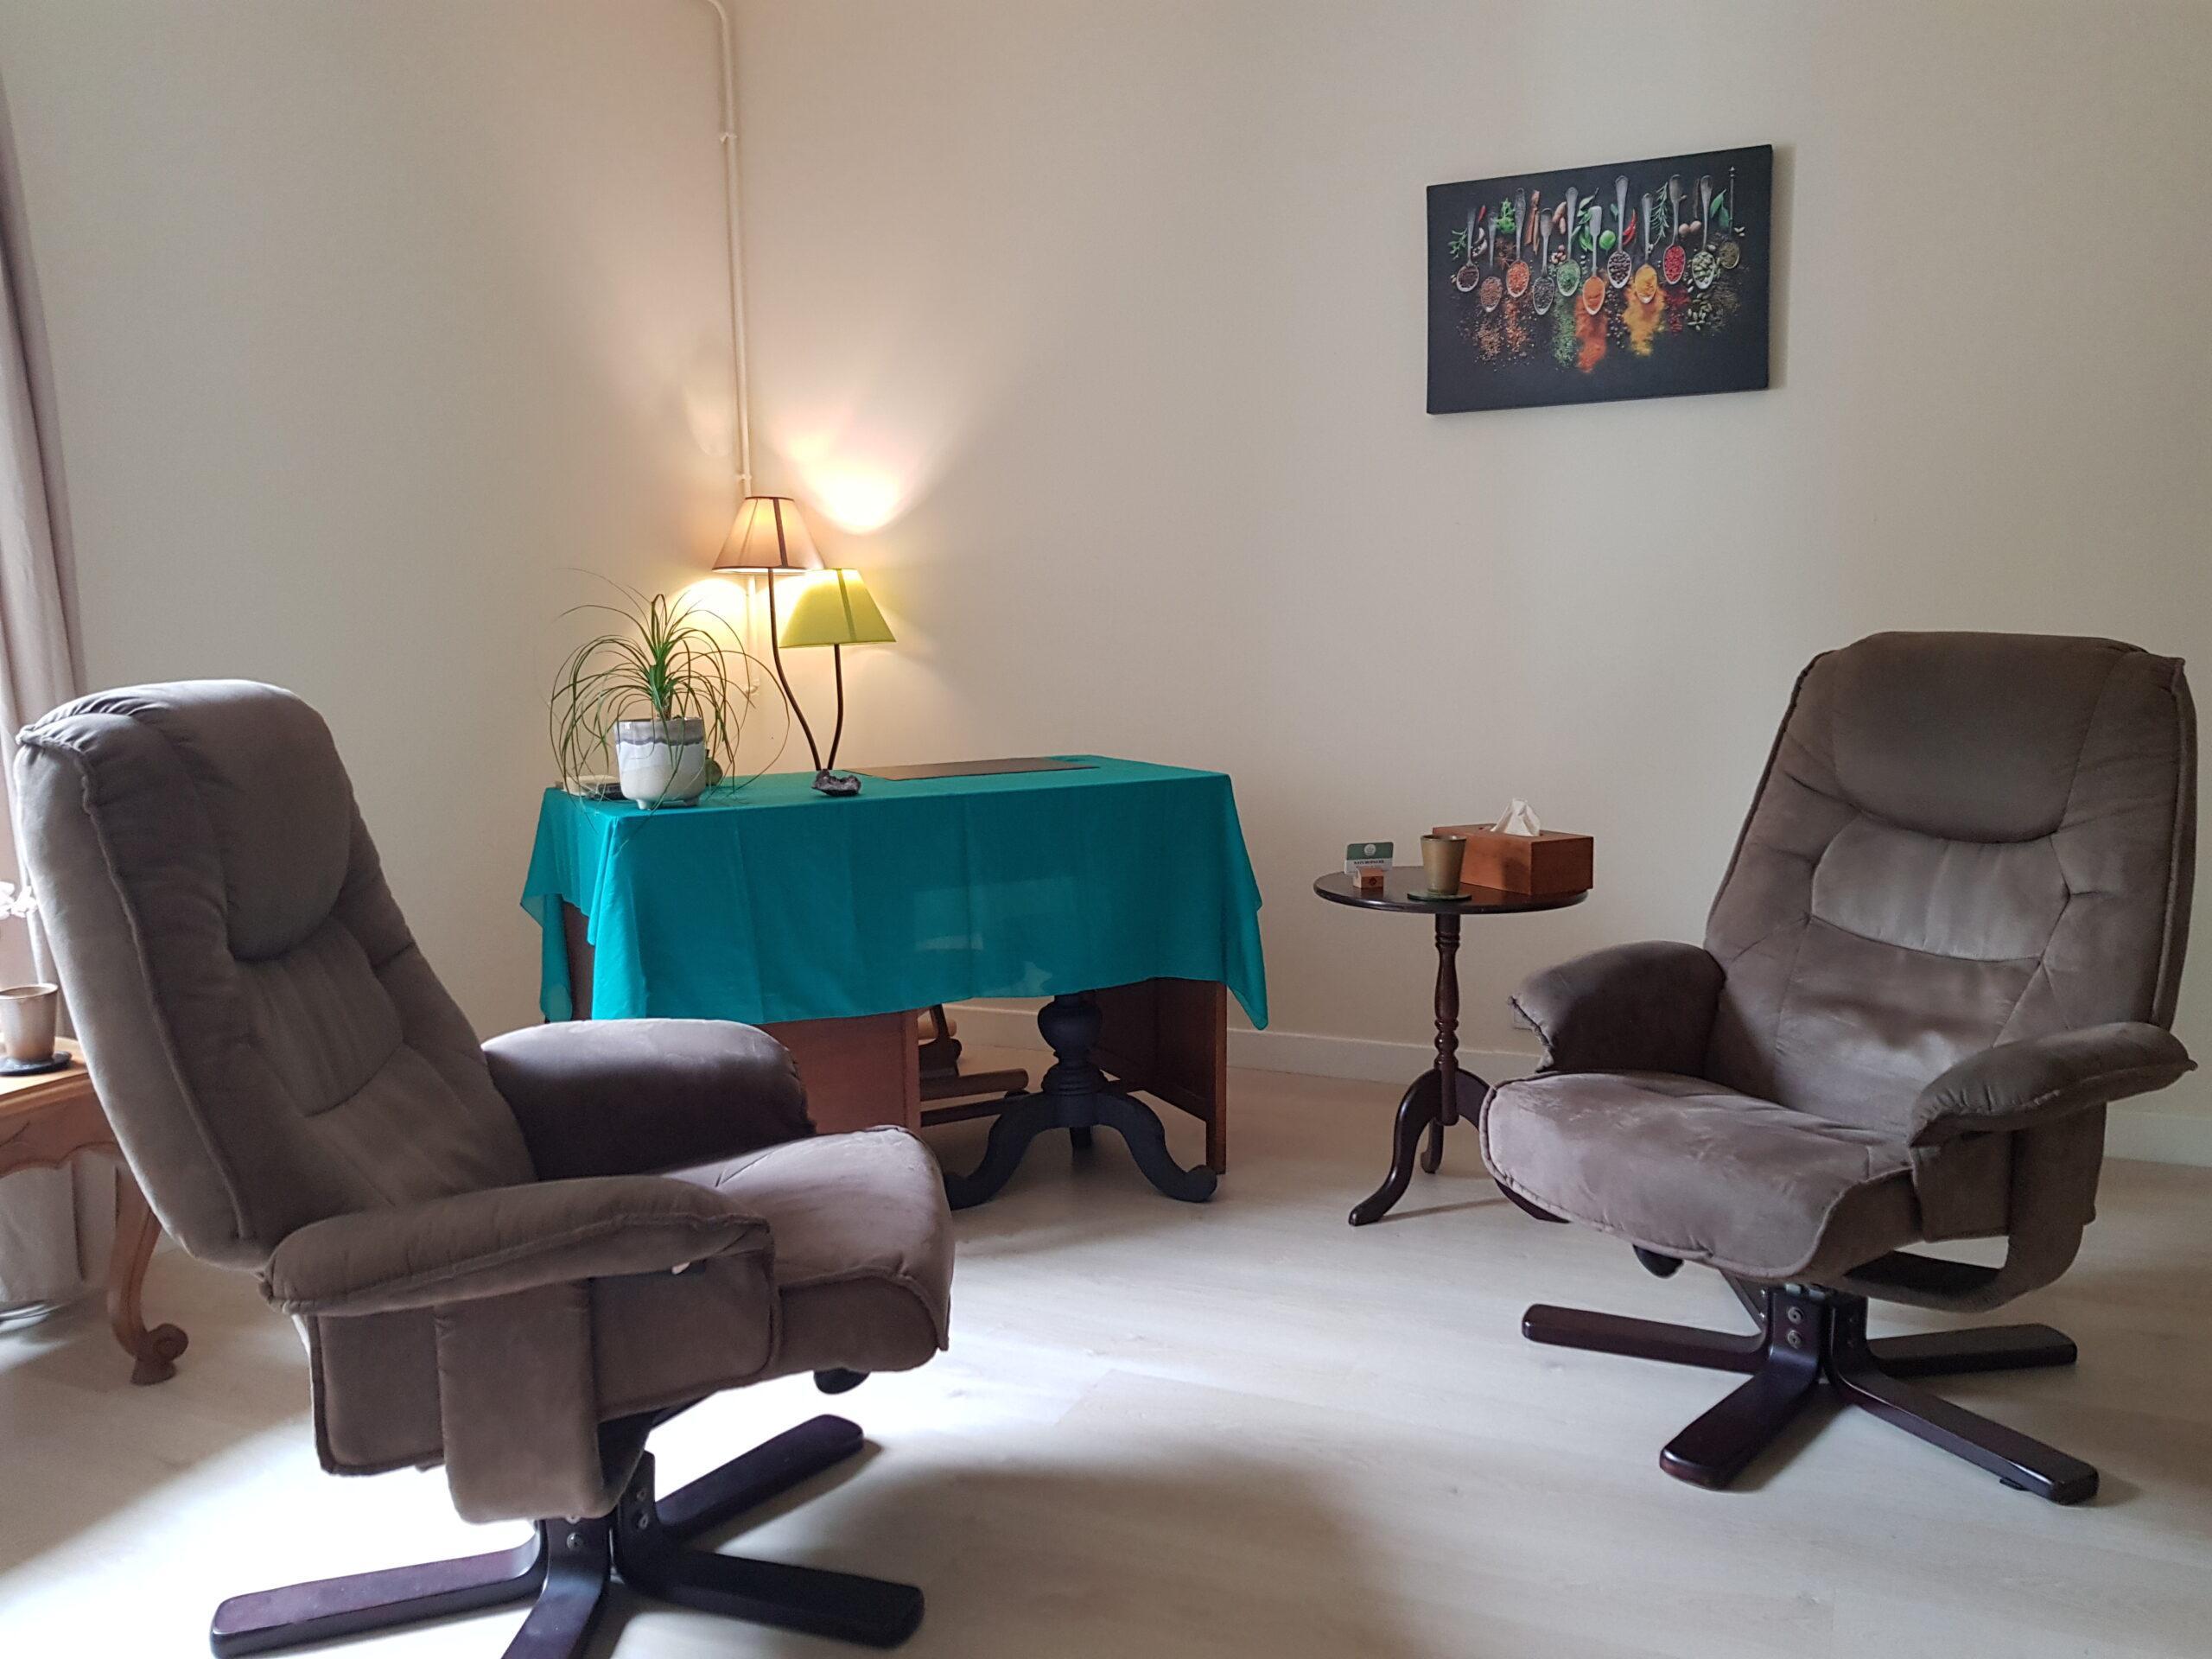 Cette photo présente un cabinet de consultation avec deux fauteuils marrons en premier plan, un bureau en second plan et un tableau au mur.